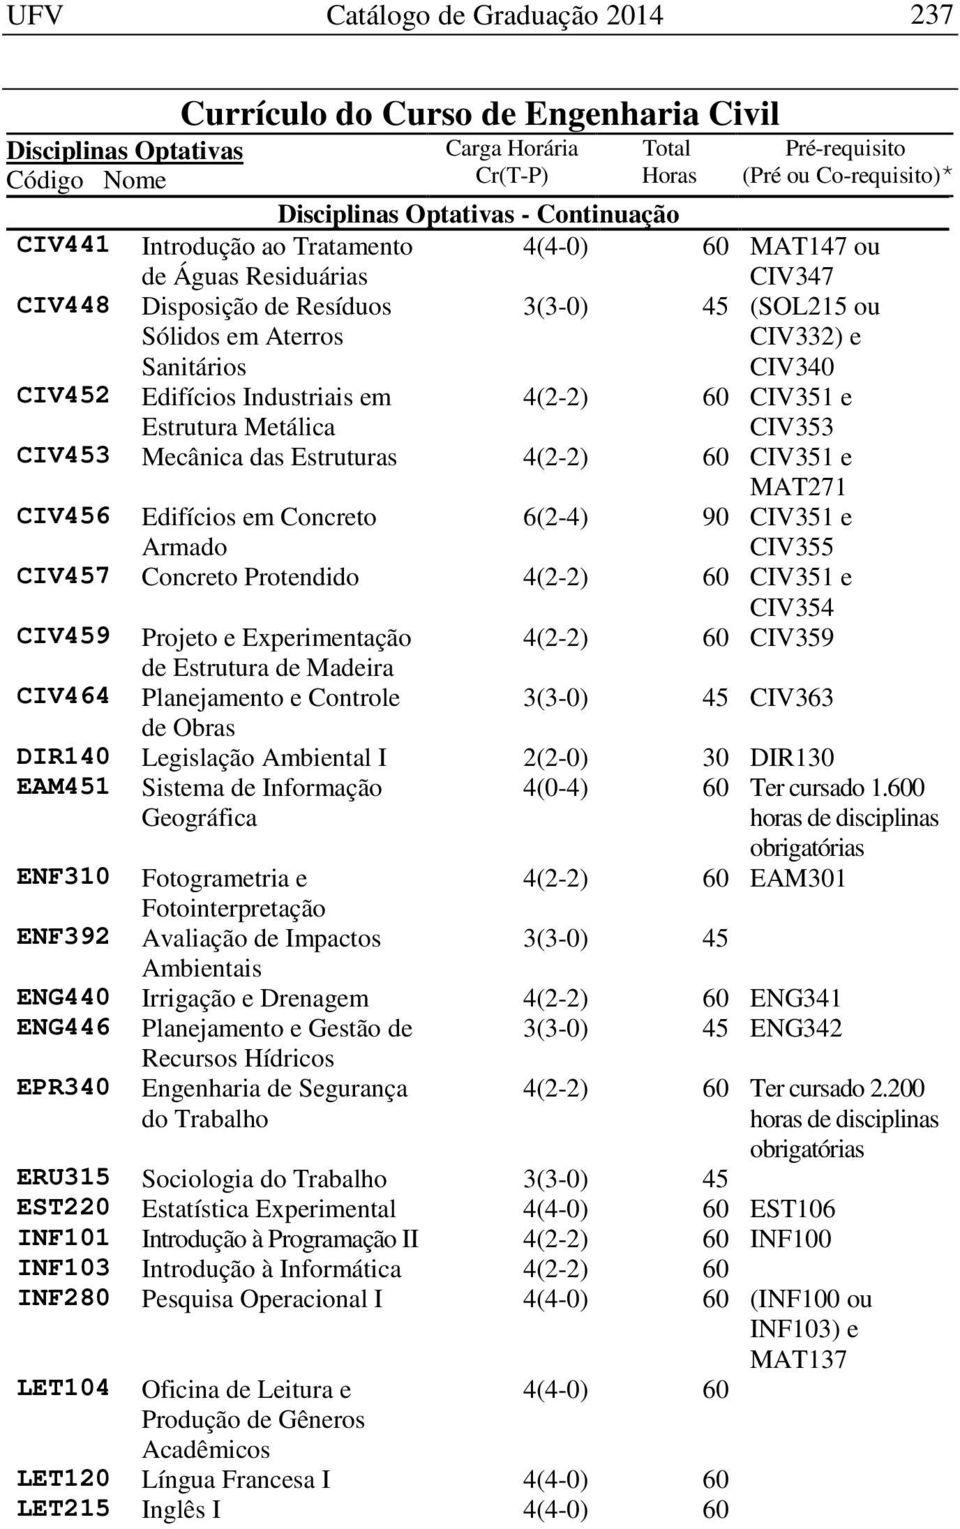 CIV351 e MAT271 CIV456 Edifícios em Concreto Armado 6(2-4) 90 CIV351 e CIV355 CIV457 Concreto Protendido 4(2-2) 60 CIV351 e CIV354 CIV459 Projeto e Experimentação 4(2-2) 60 CIV359 de Estrutura de